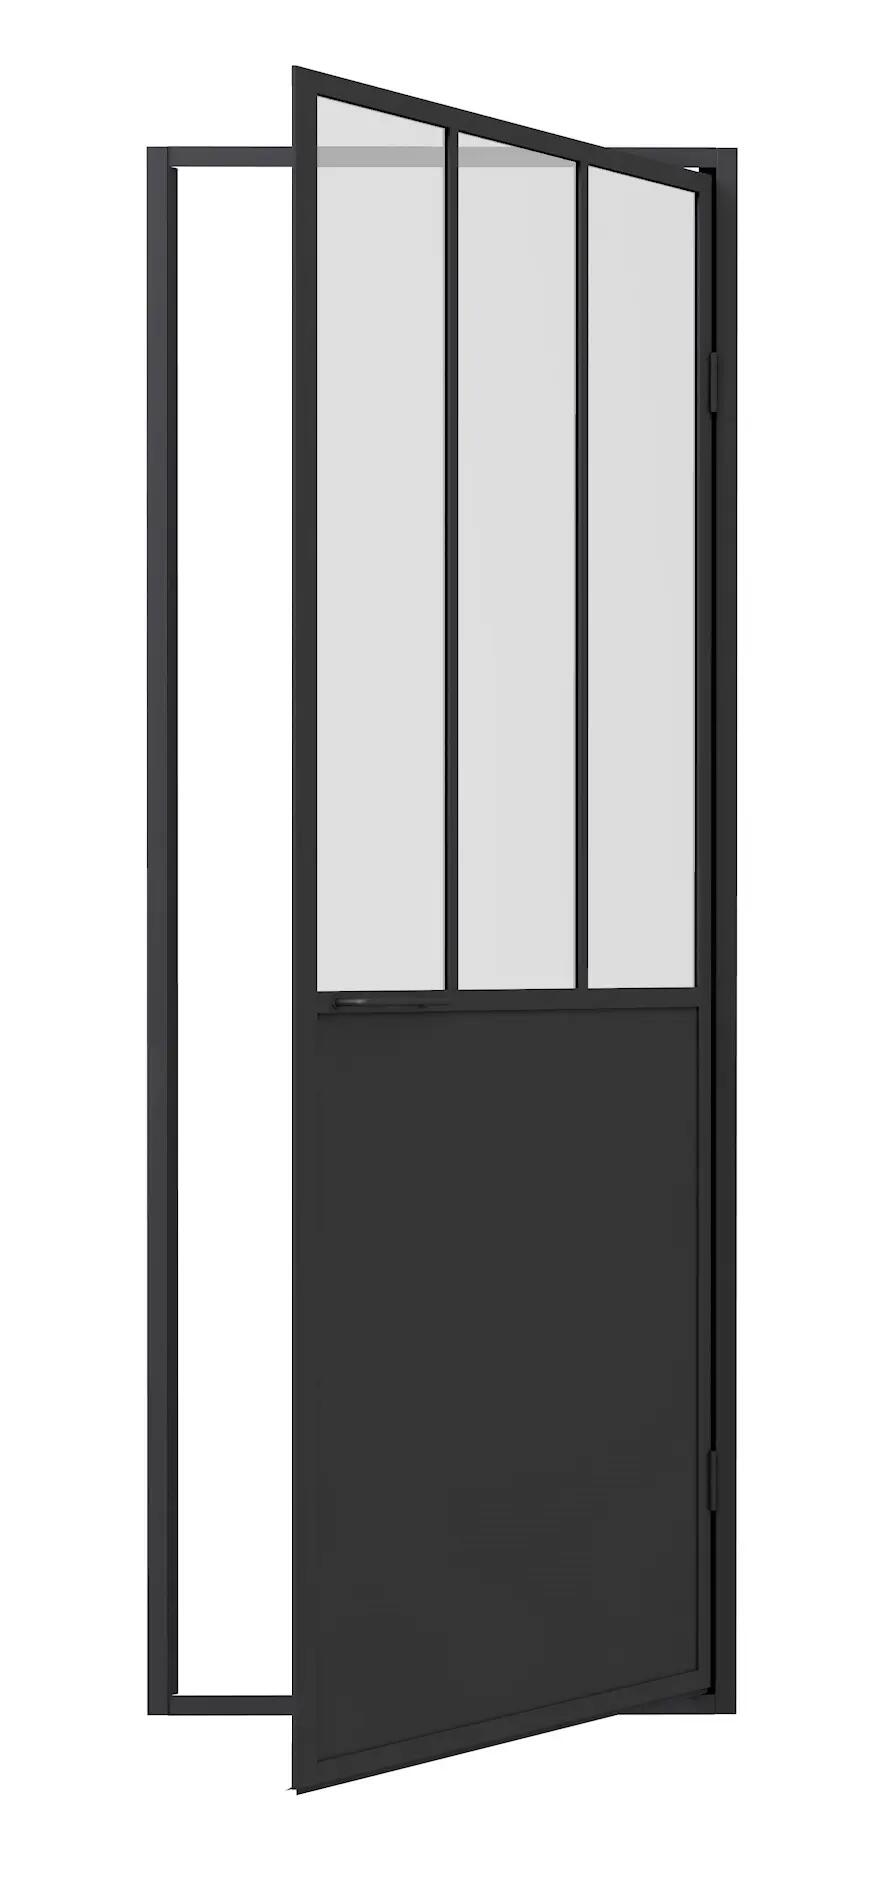 Porte de douche industrielle pivotante transparent, noir 80 cm, Artelo | Leroy Merlin